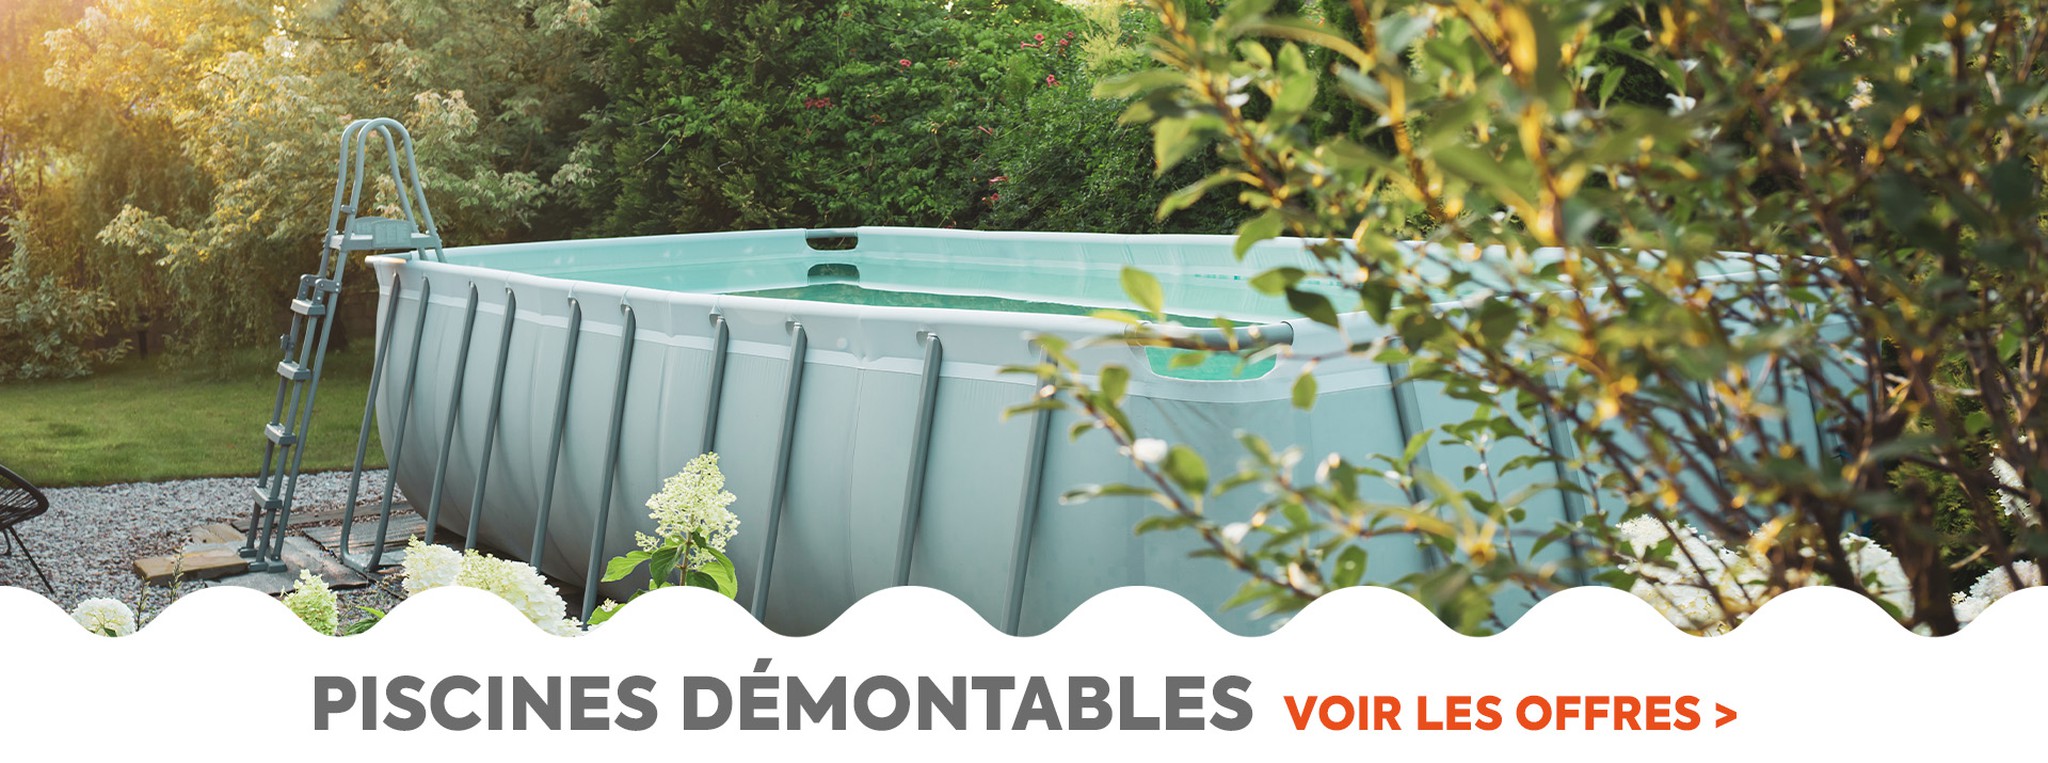 Découvrez notre gamme de piscines amovibles au meilleur prix pour des heures de plaisir dans votre jardin cet été.